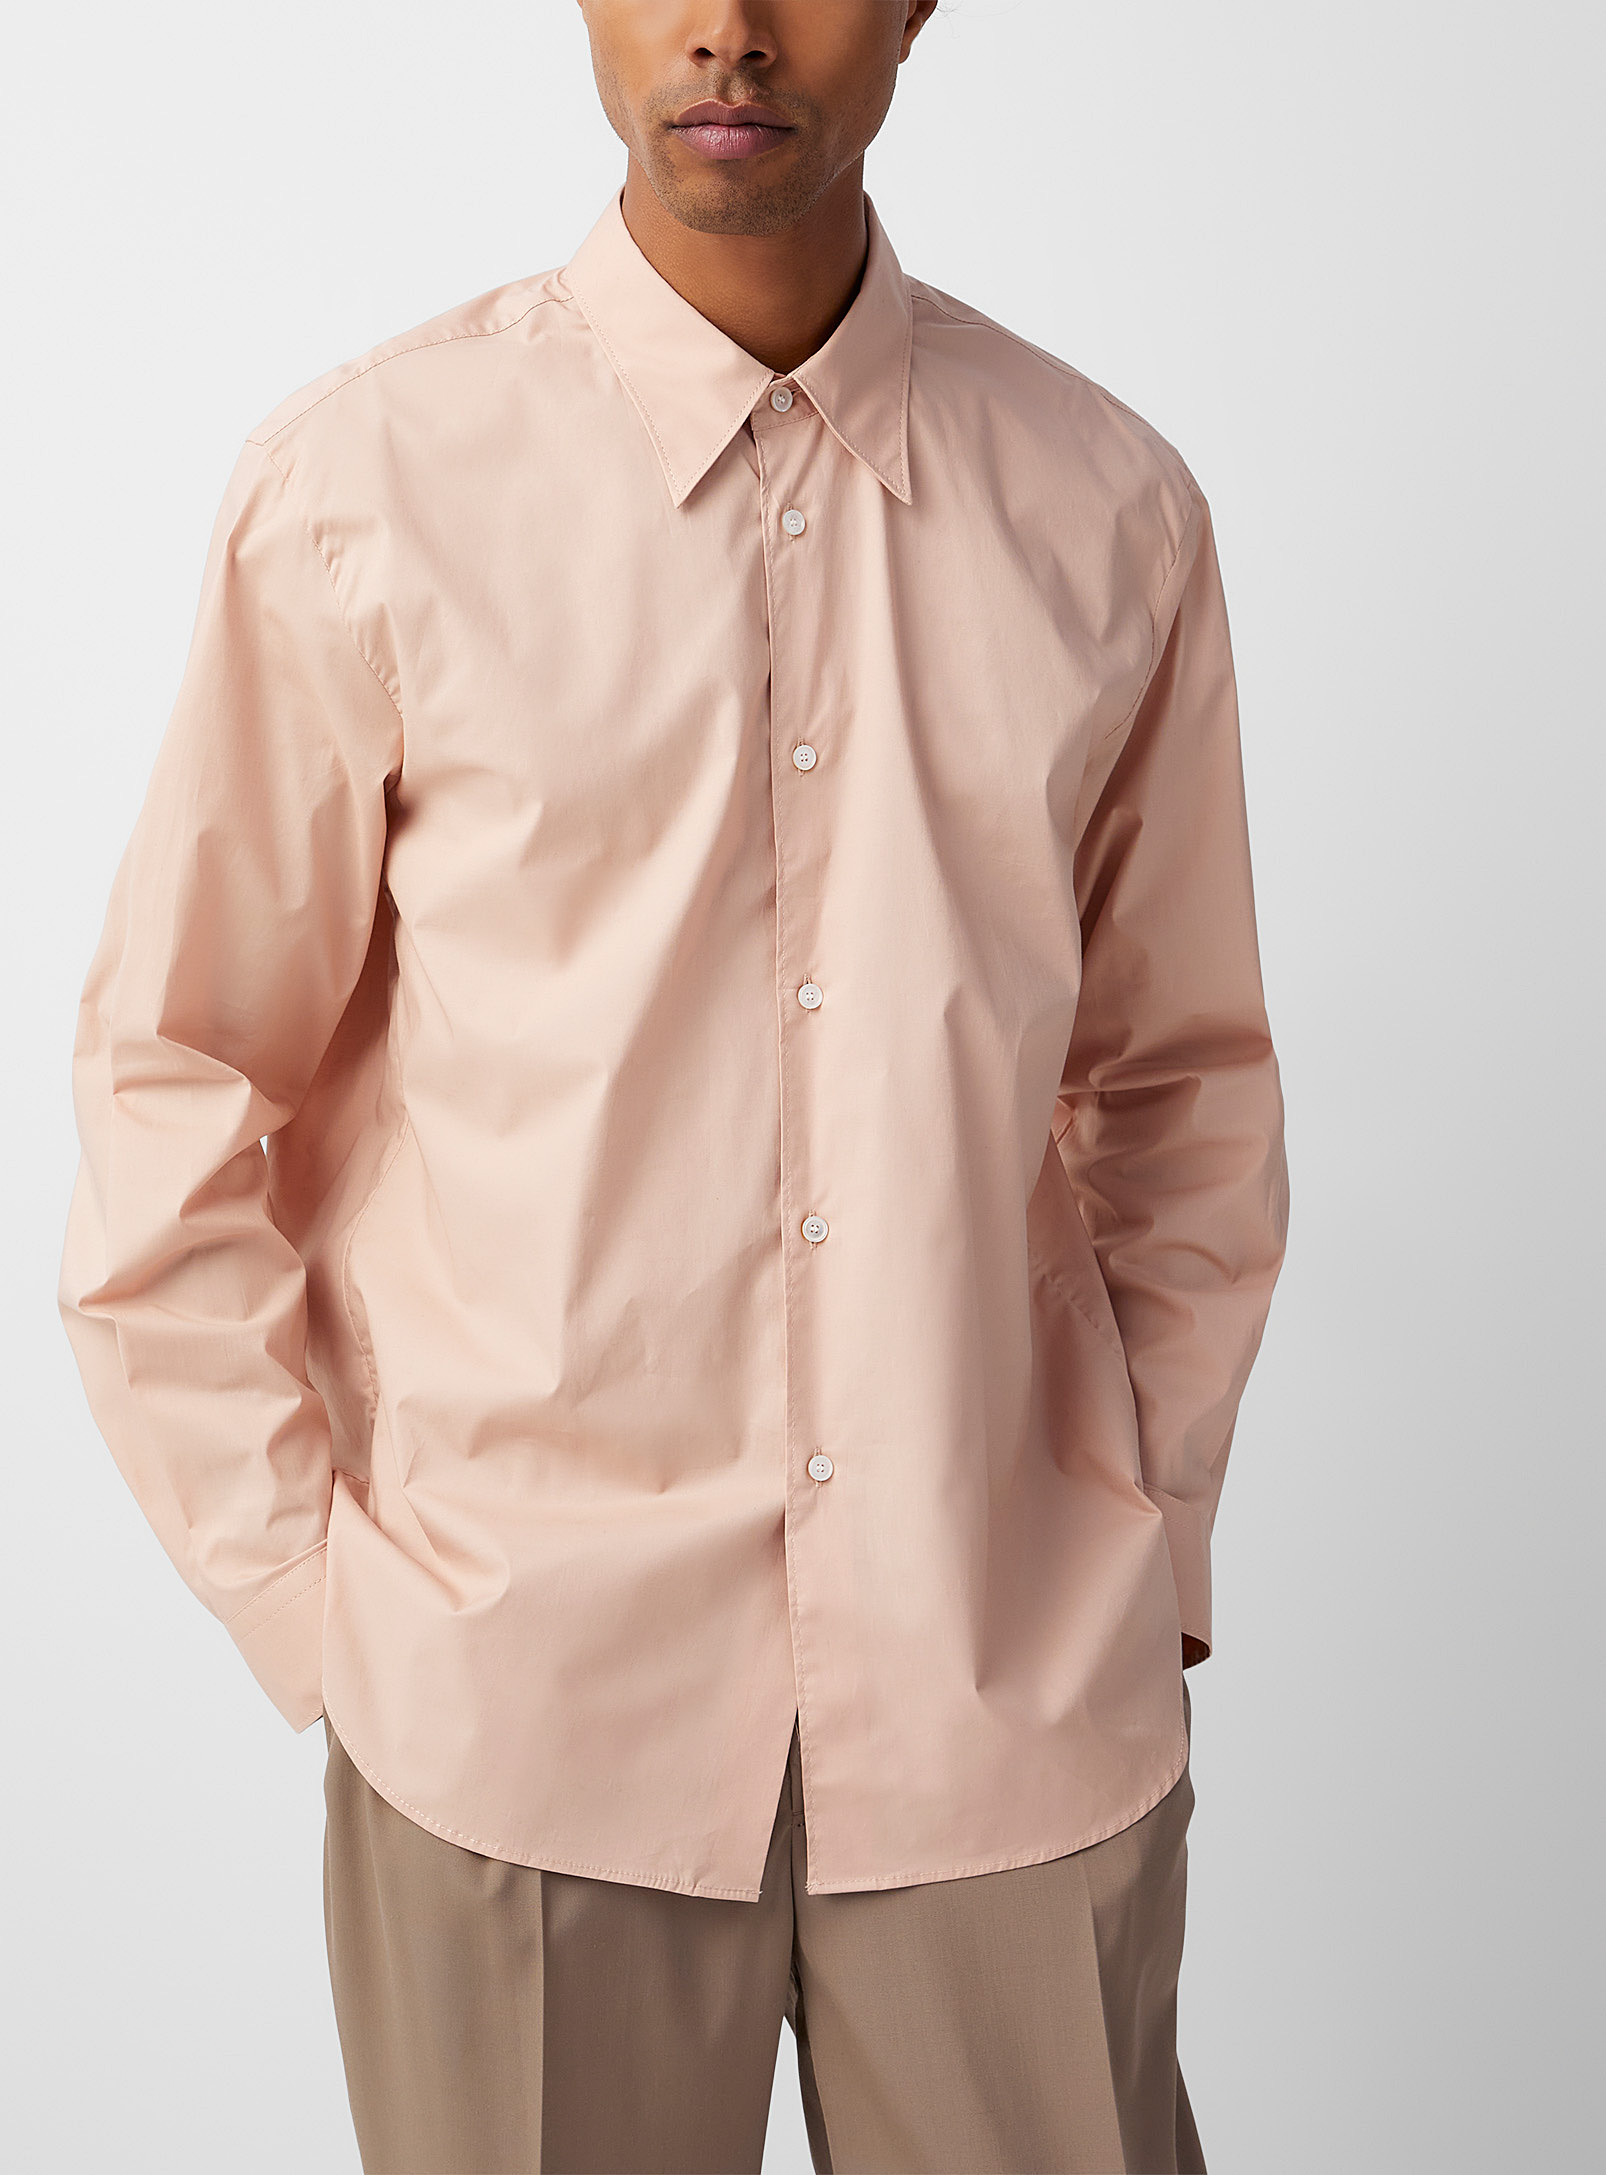 Acne Studios - Men's Rosy beige poplin shirt